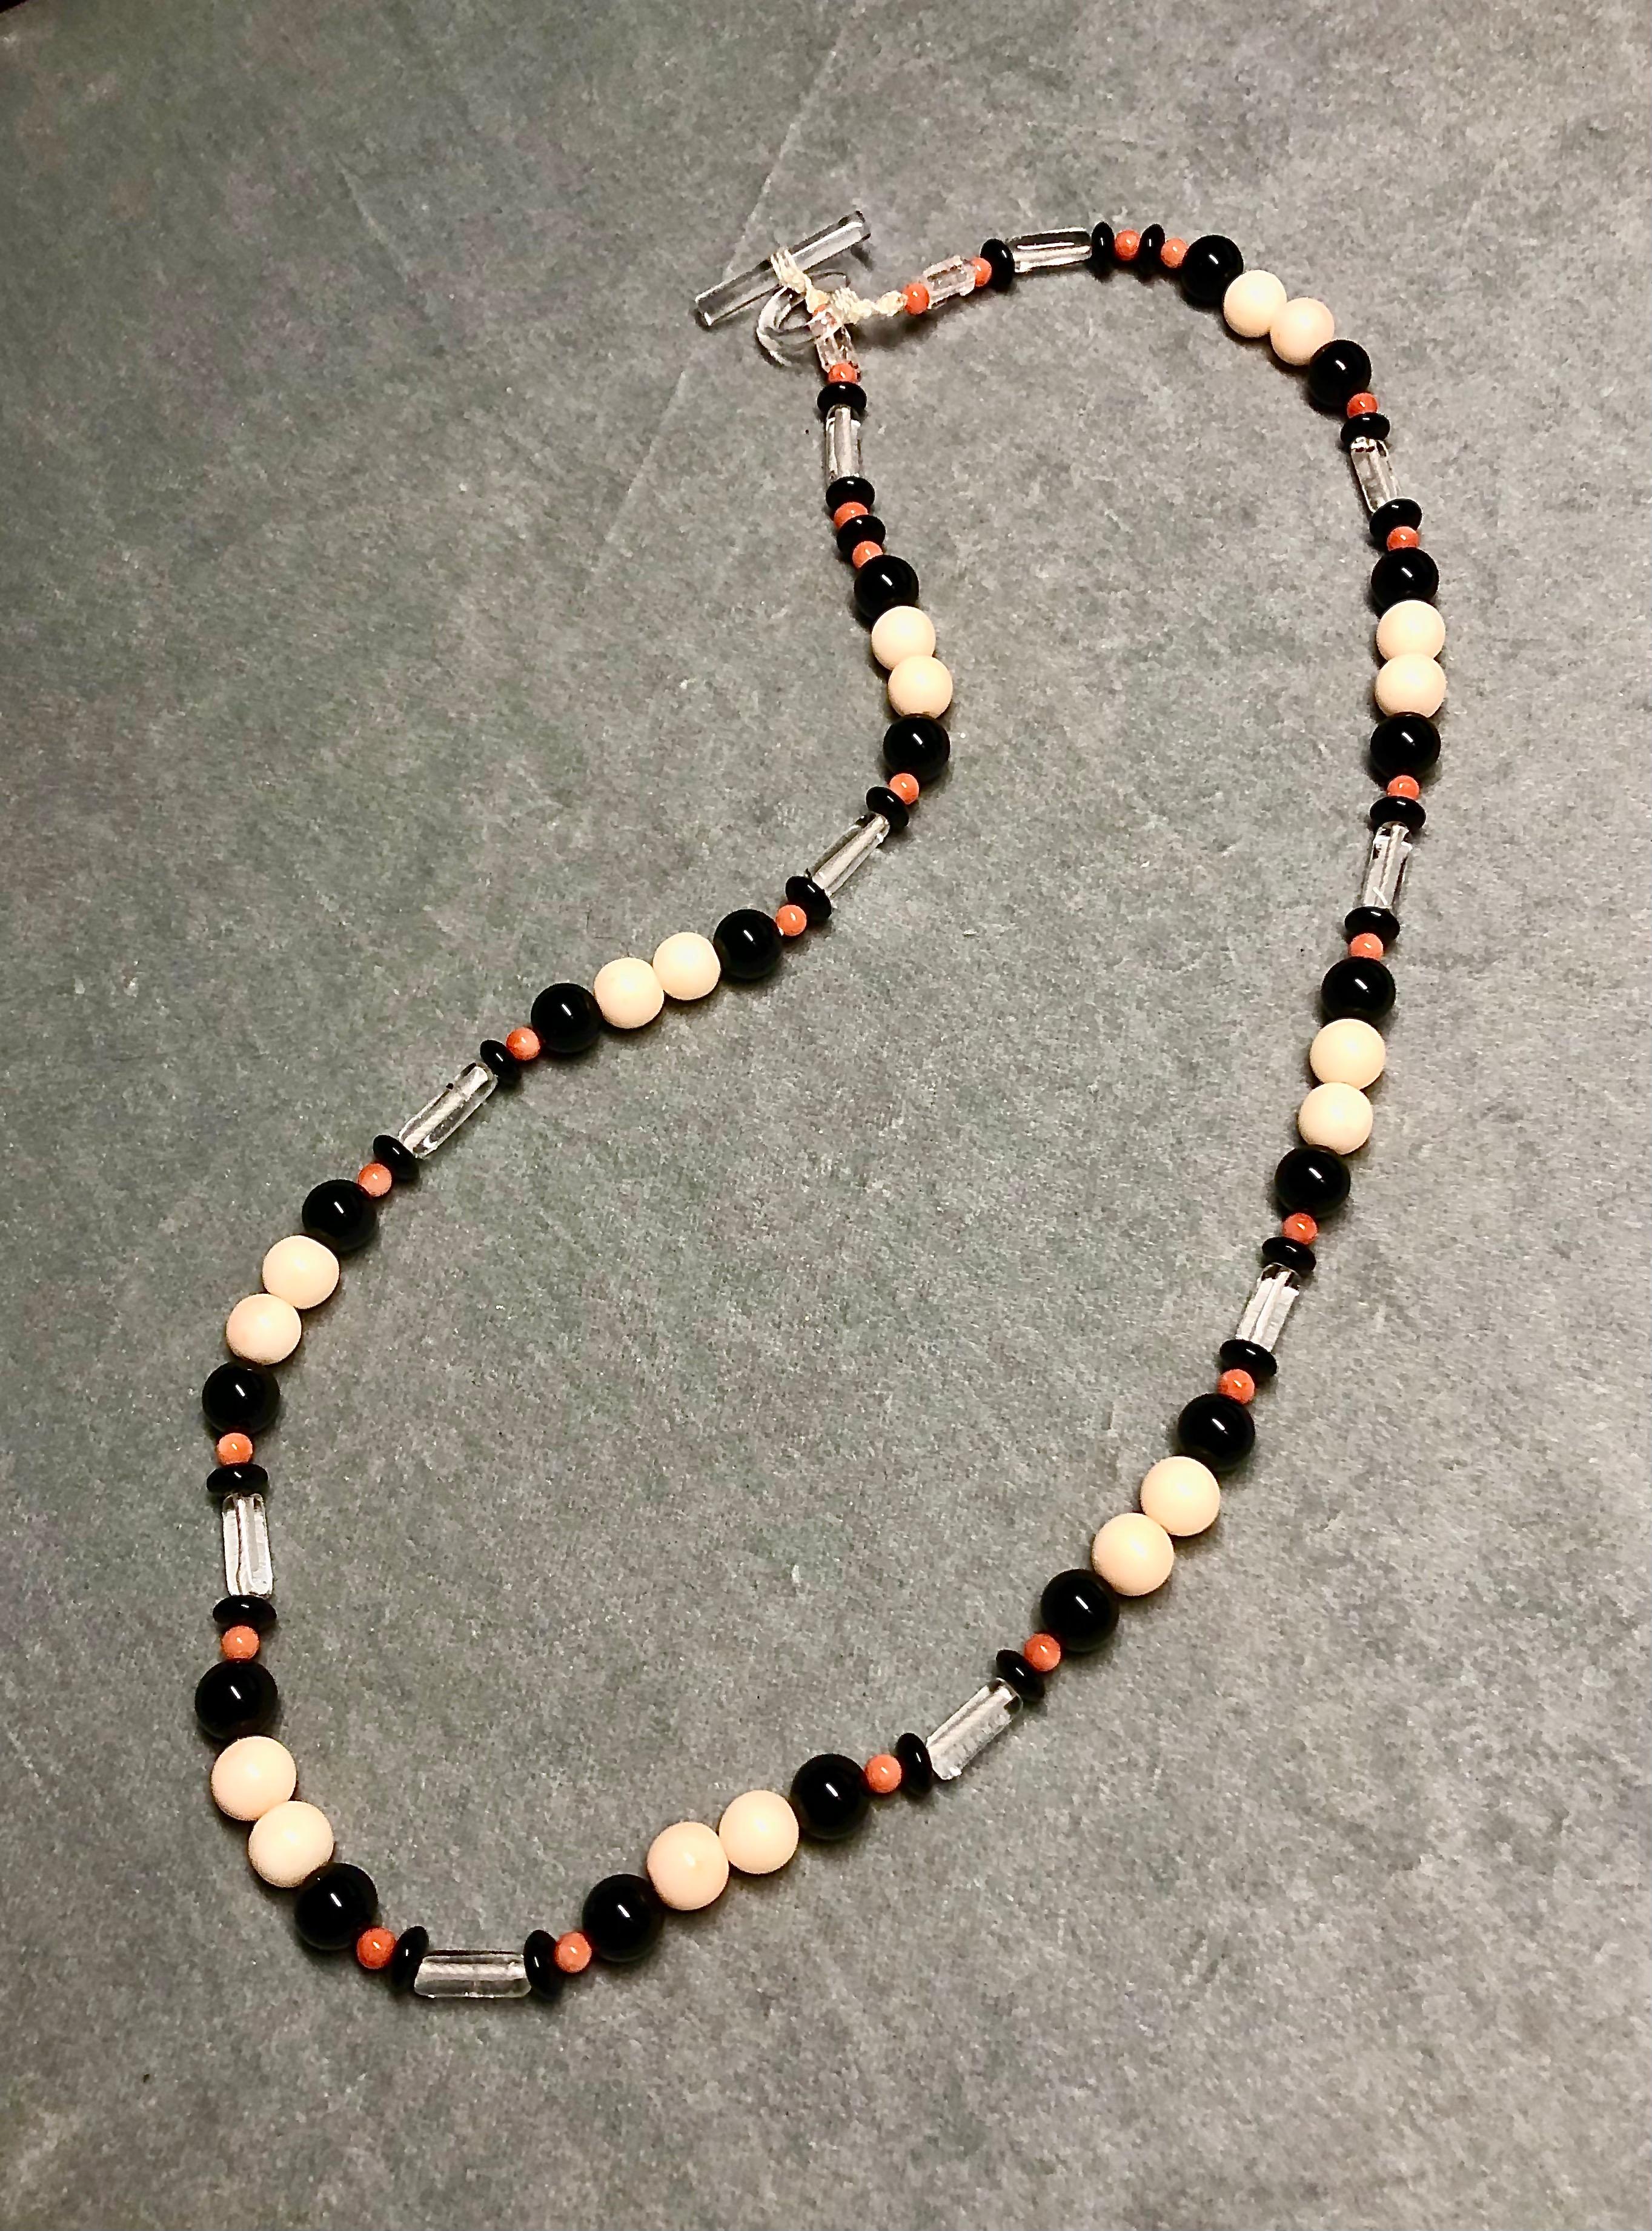 Collier à deux brins. Deux colliers, dont l'un est un brin unique avec un motif coordonné conçu pour être porté à l'intérieur du sautoir, sont séparés selon les souhaits. Sautoir avec perles de corail rouge/orange, perles d'onyx noir, tubes de